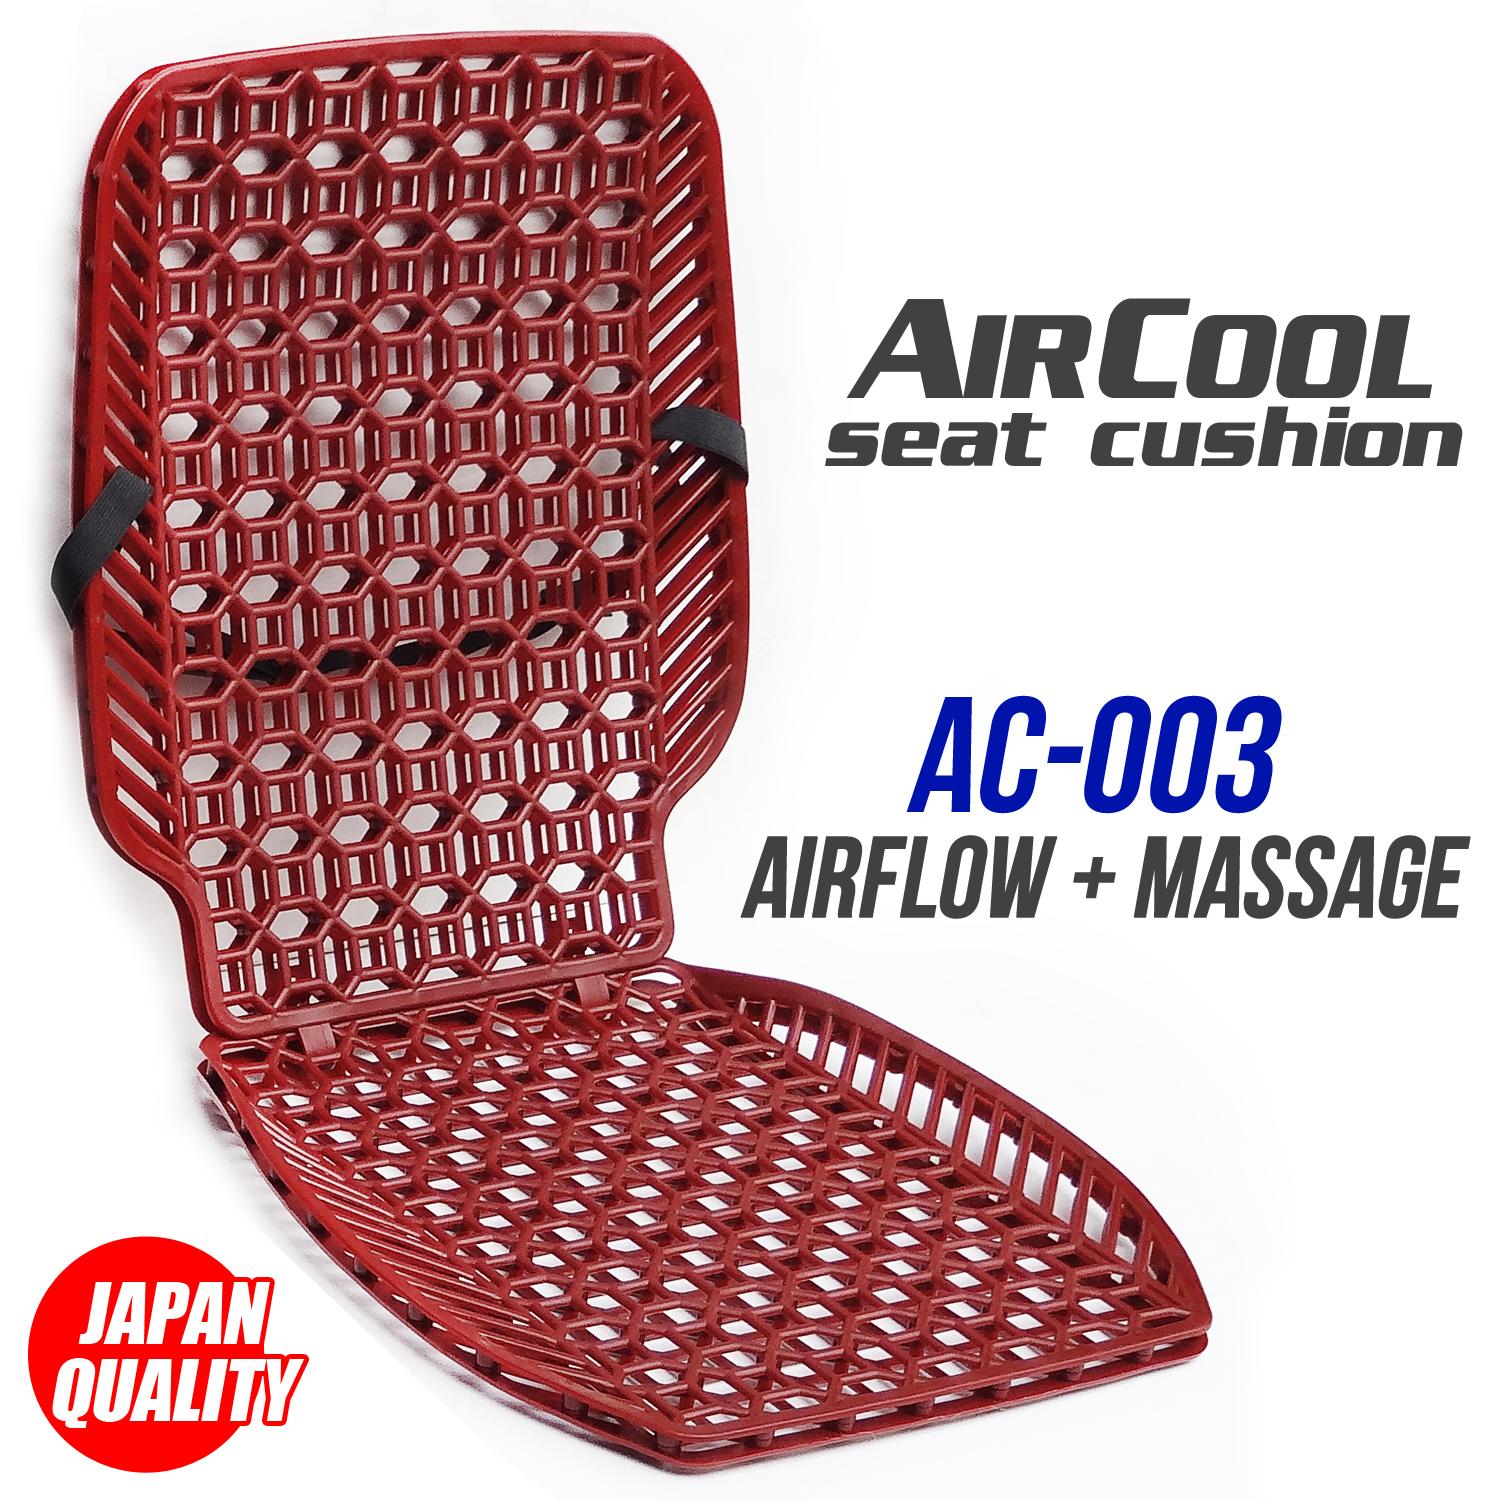 Air Flow Cushion For Chair | Chair Cushions